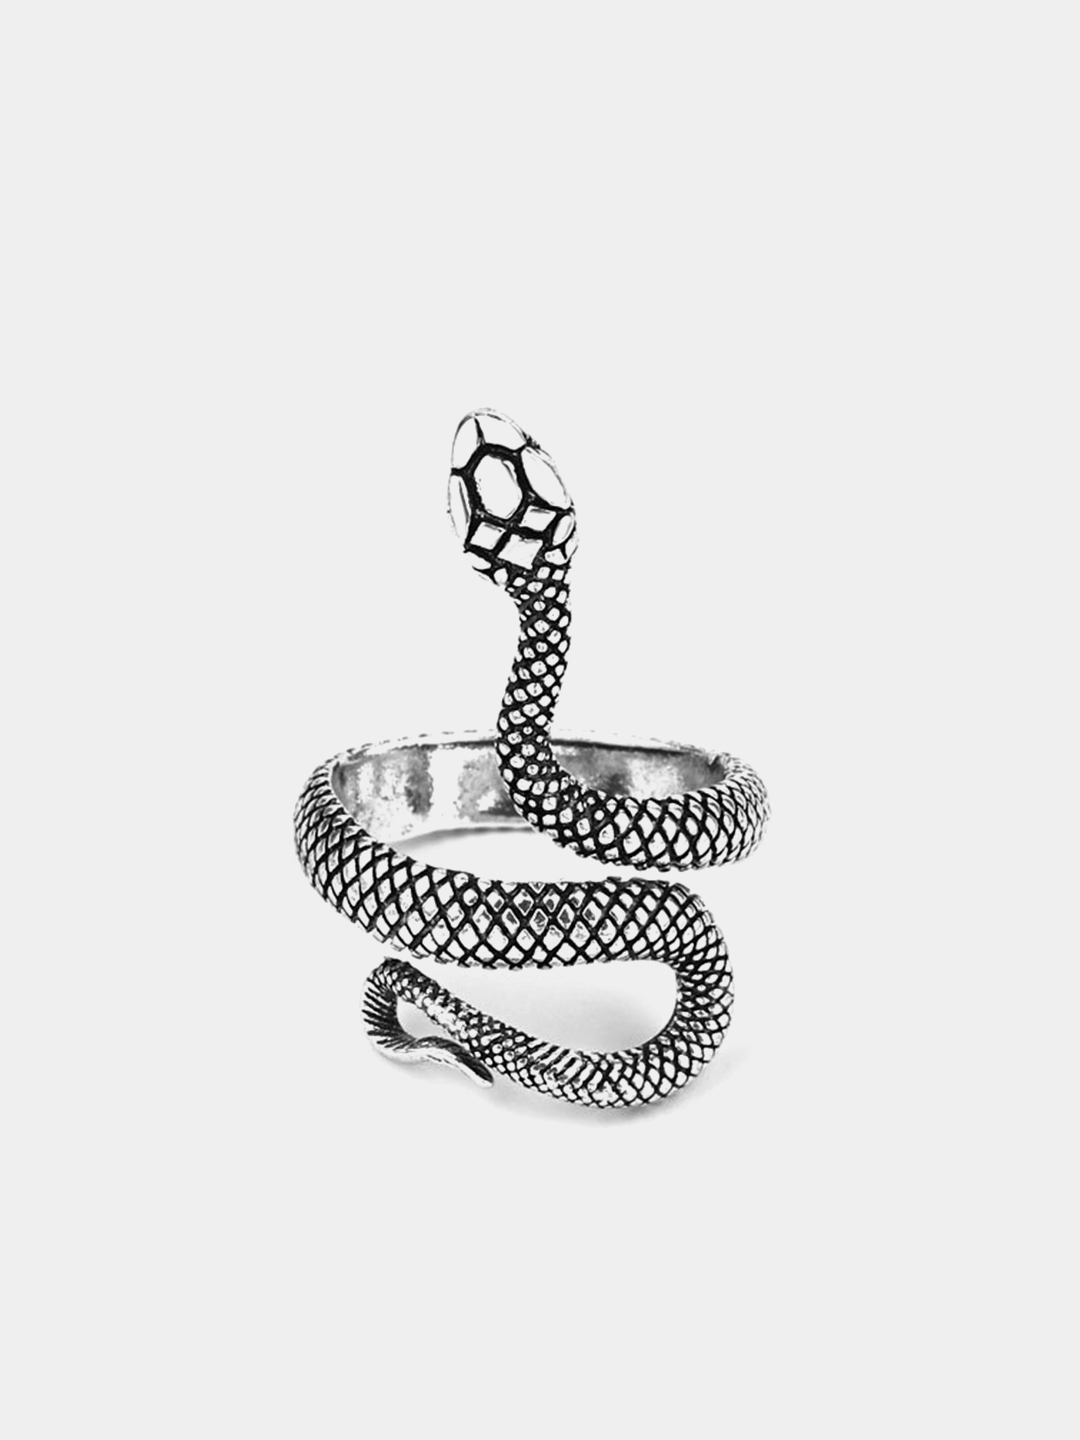 Кольцо Драко Малфоя со змеей